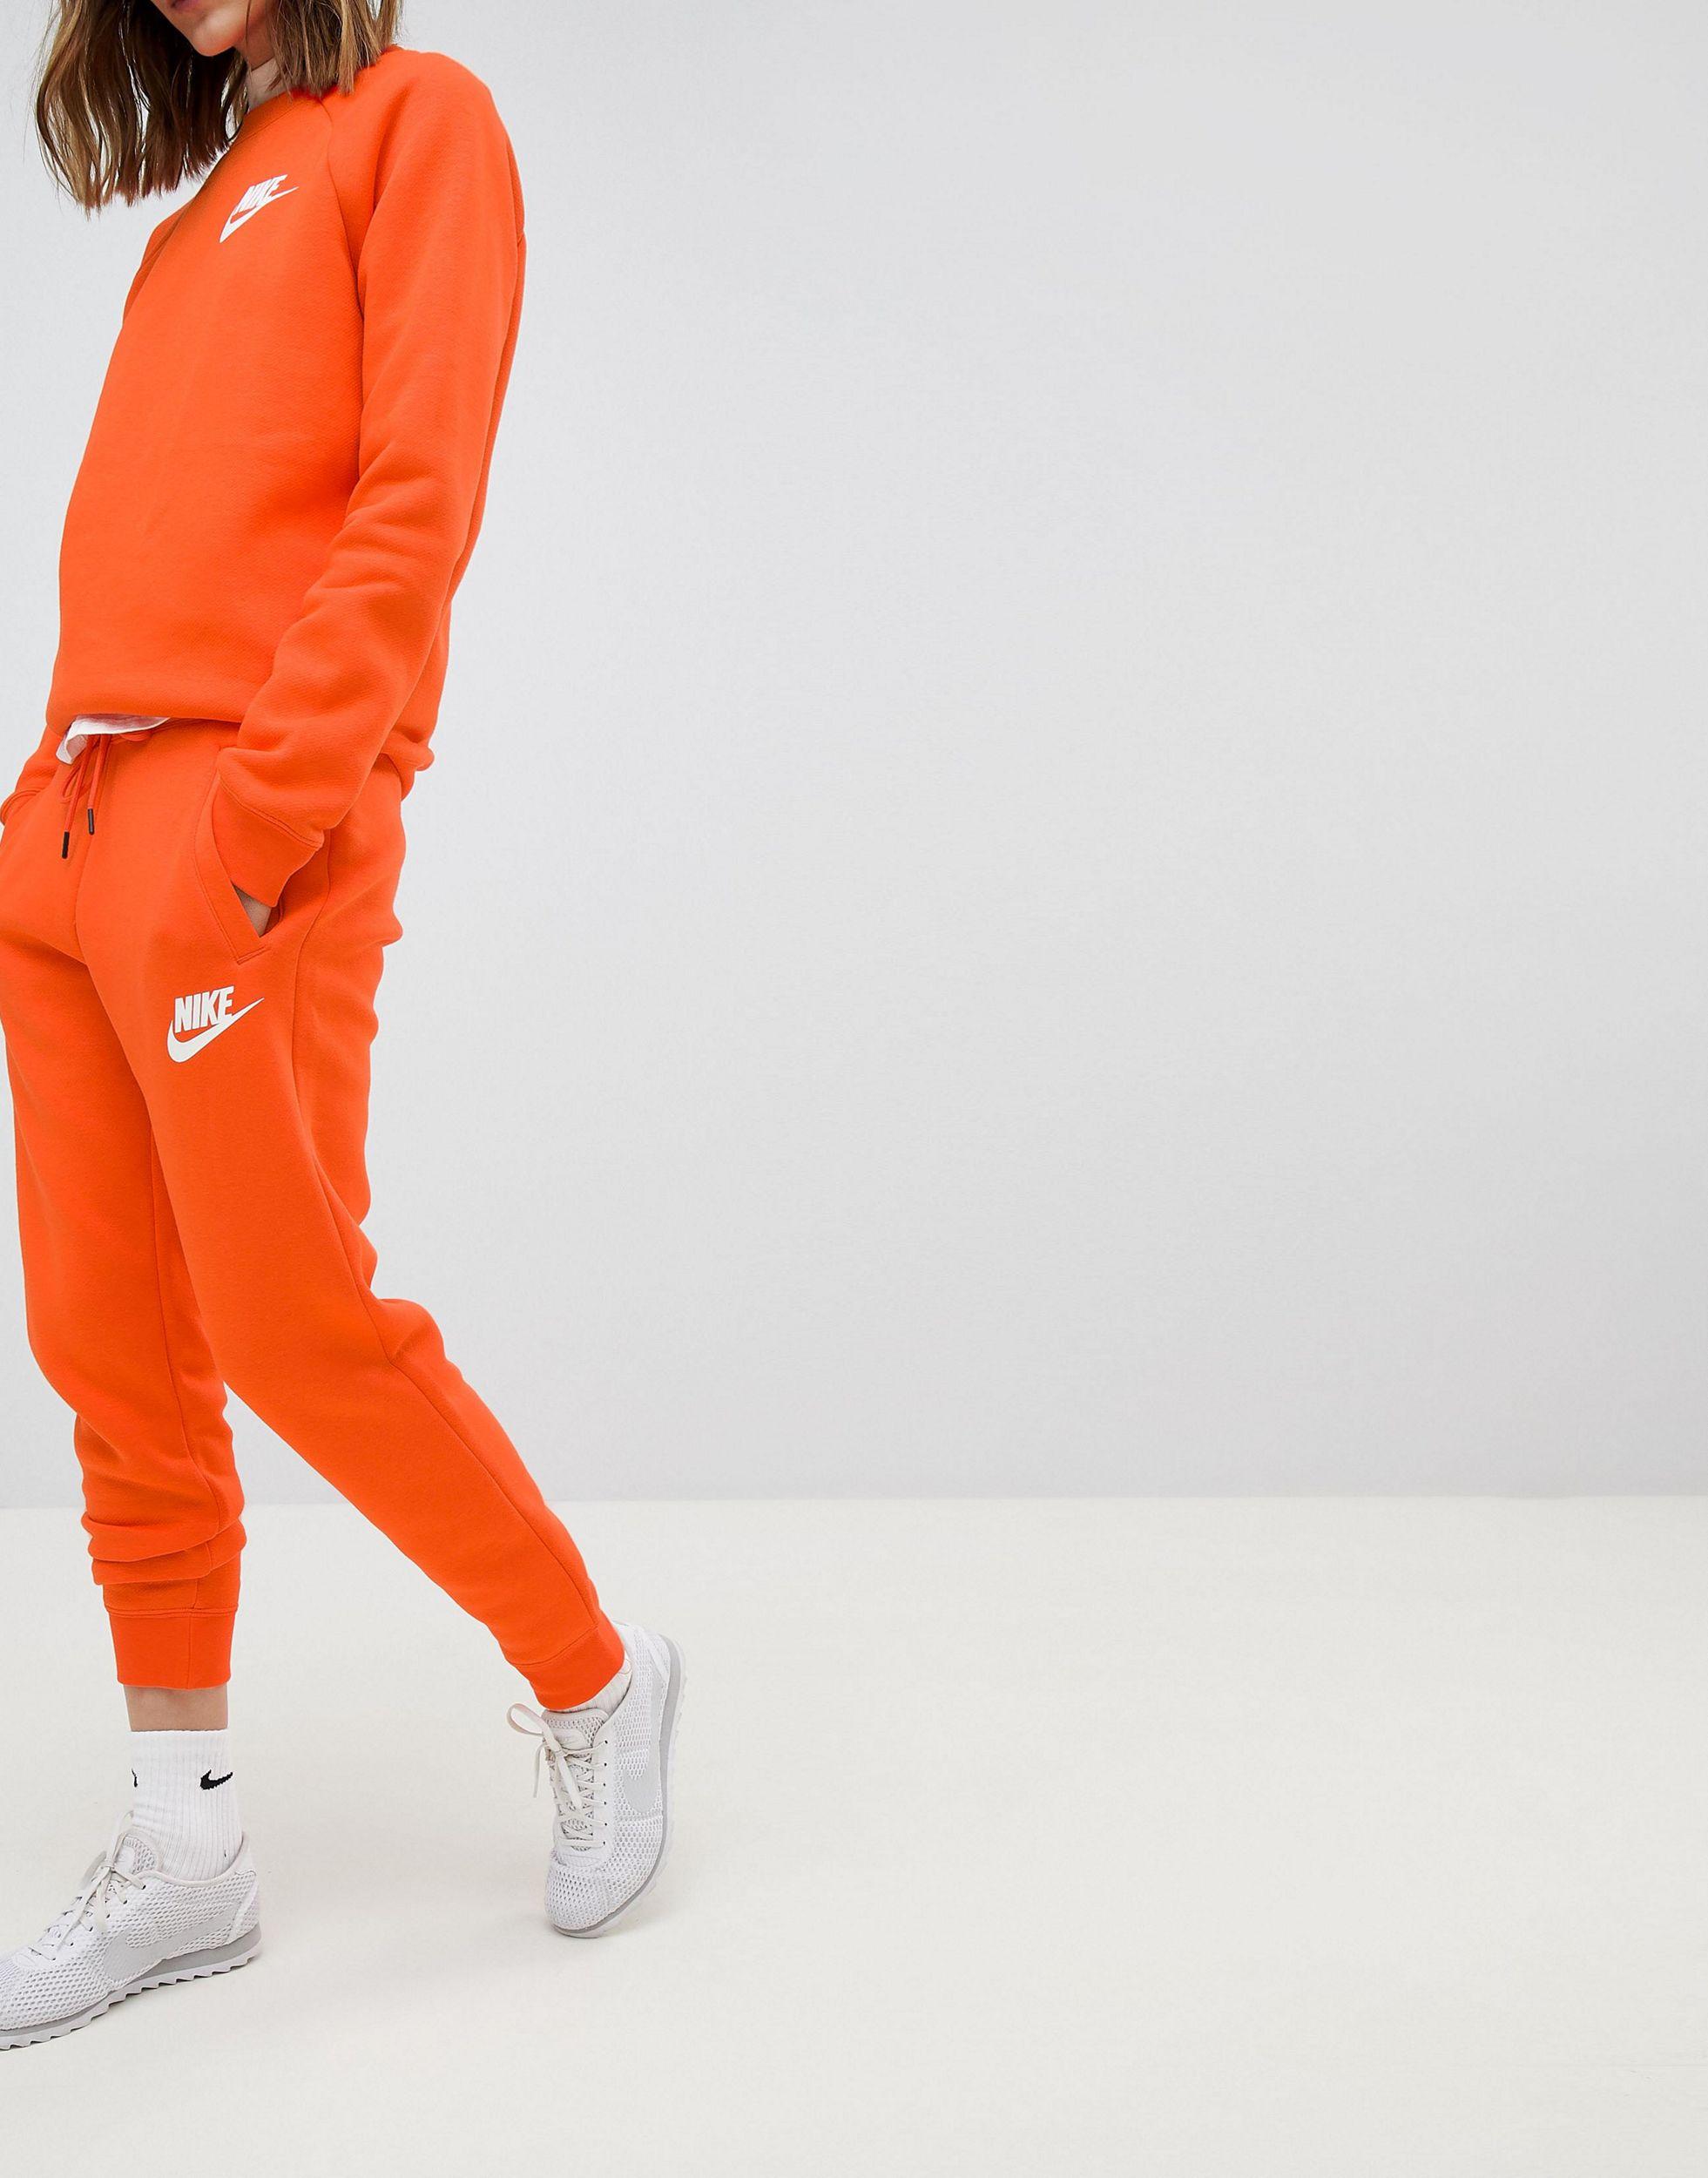 Survetement Nike Homme Orange Flash Sales, 51% OFF | propolis.az